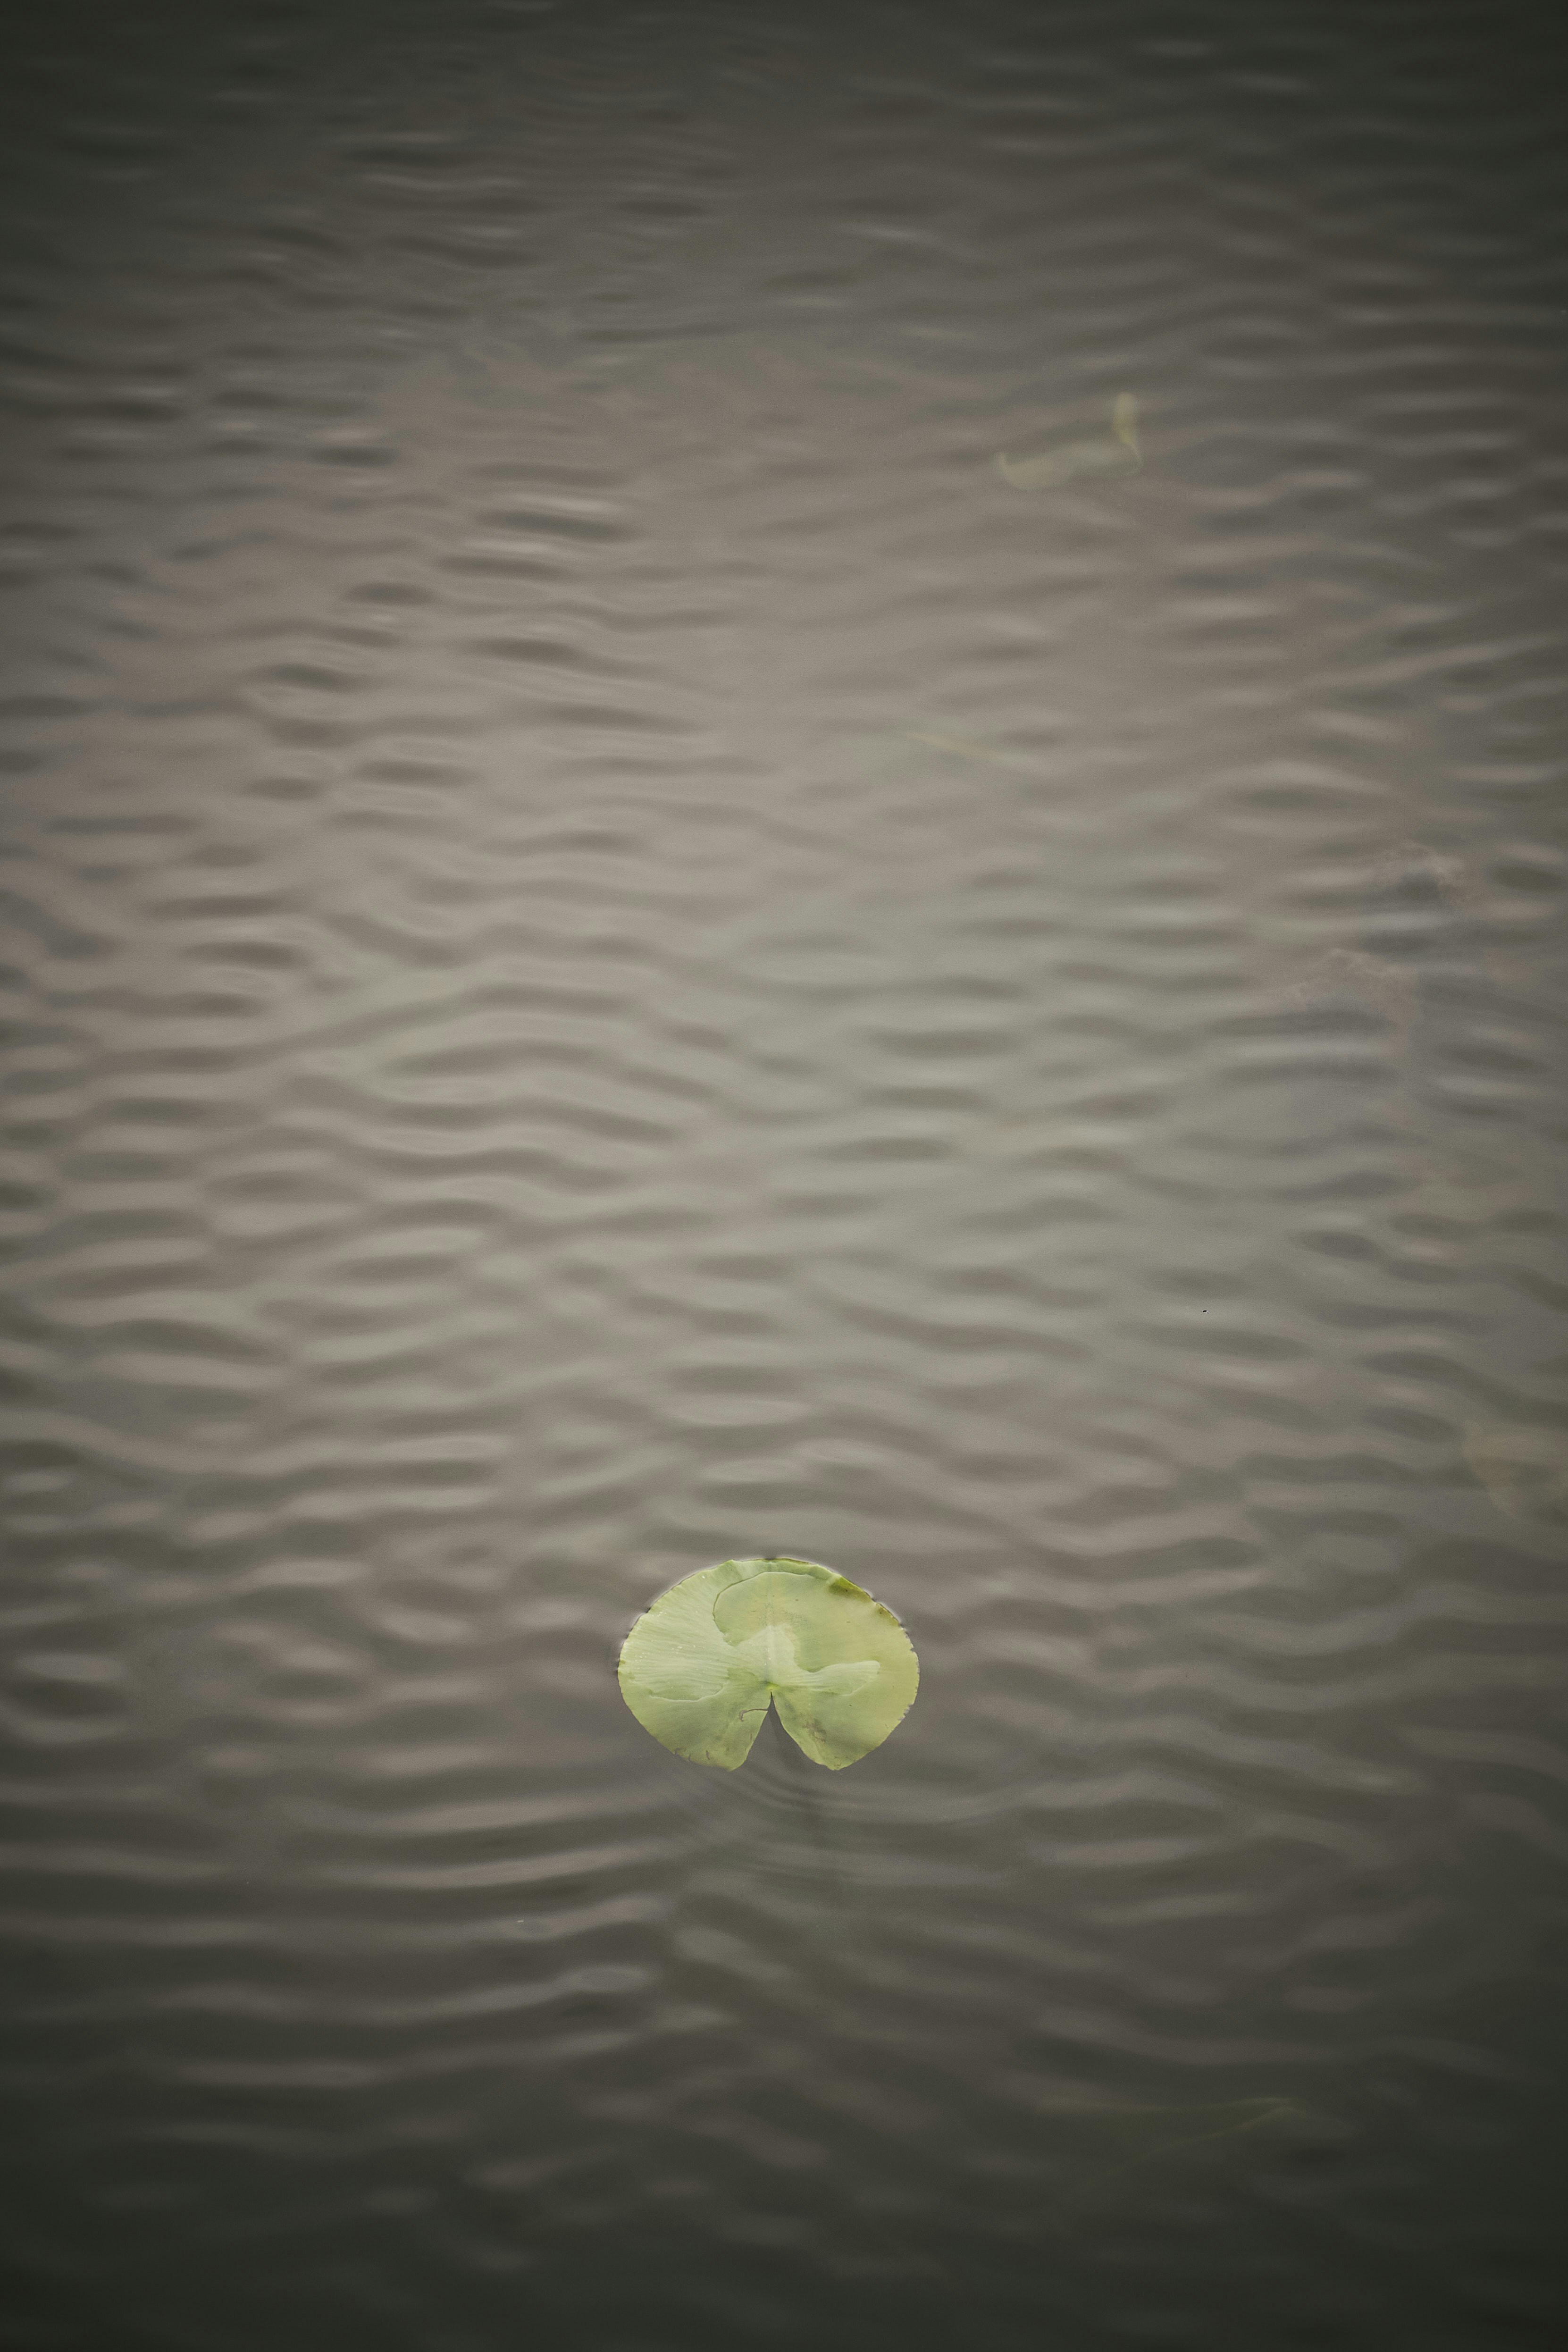 Lake, water, lily pad, leaf, waves,